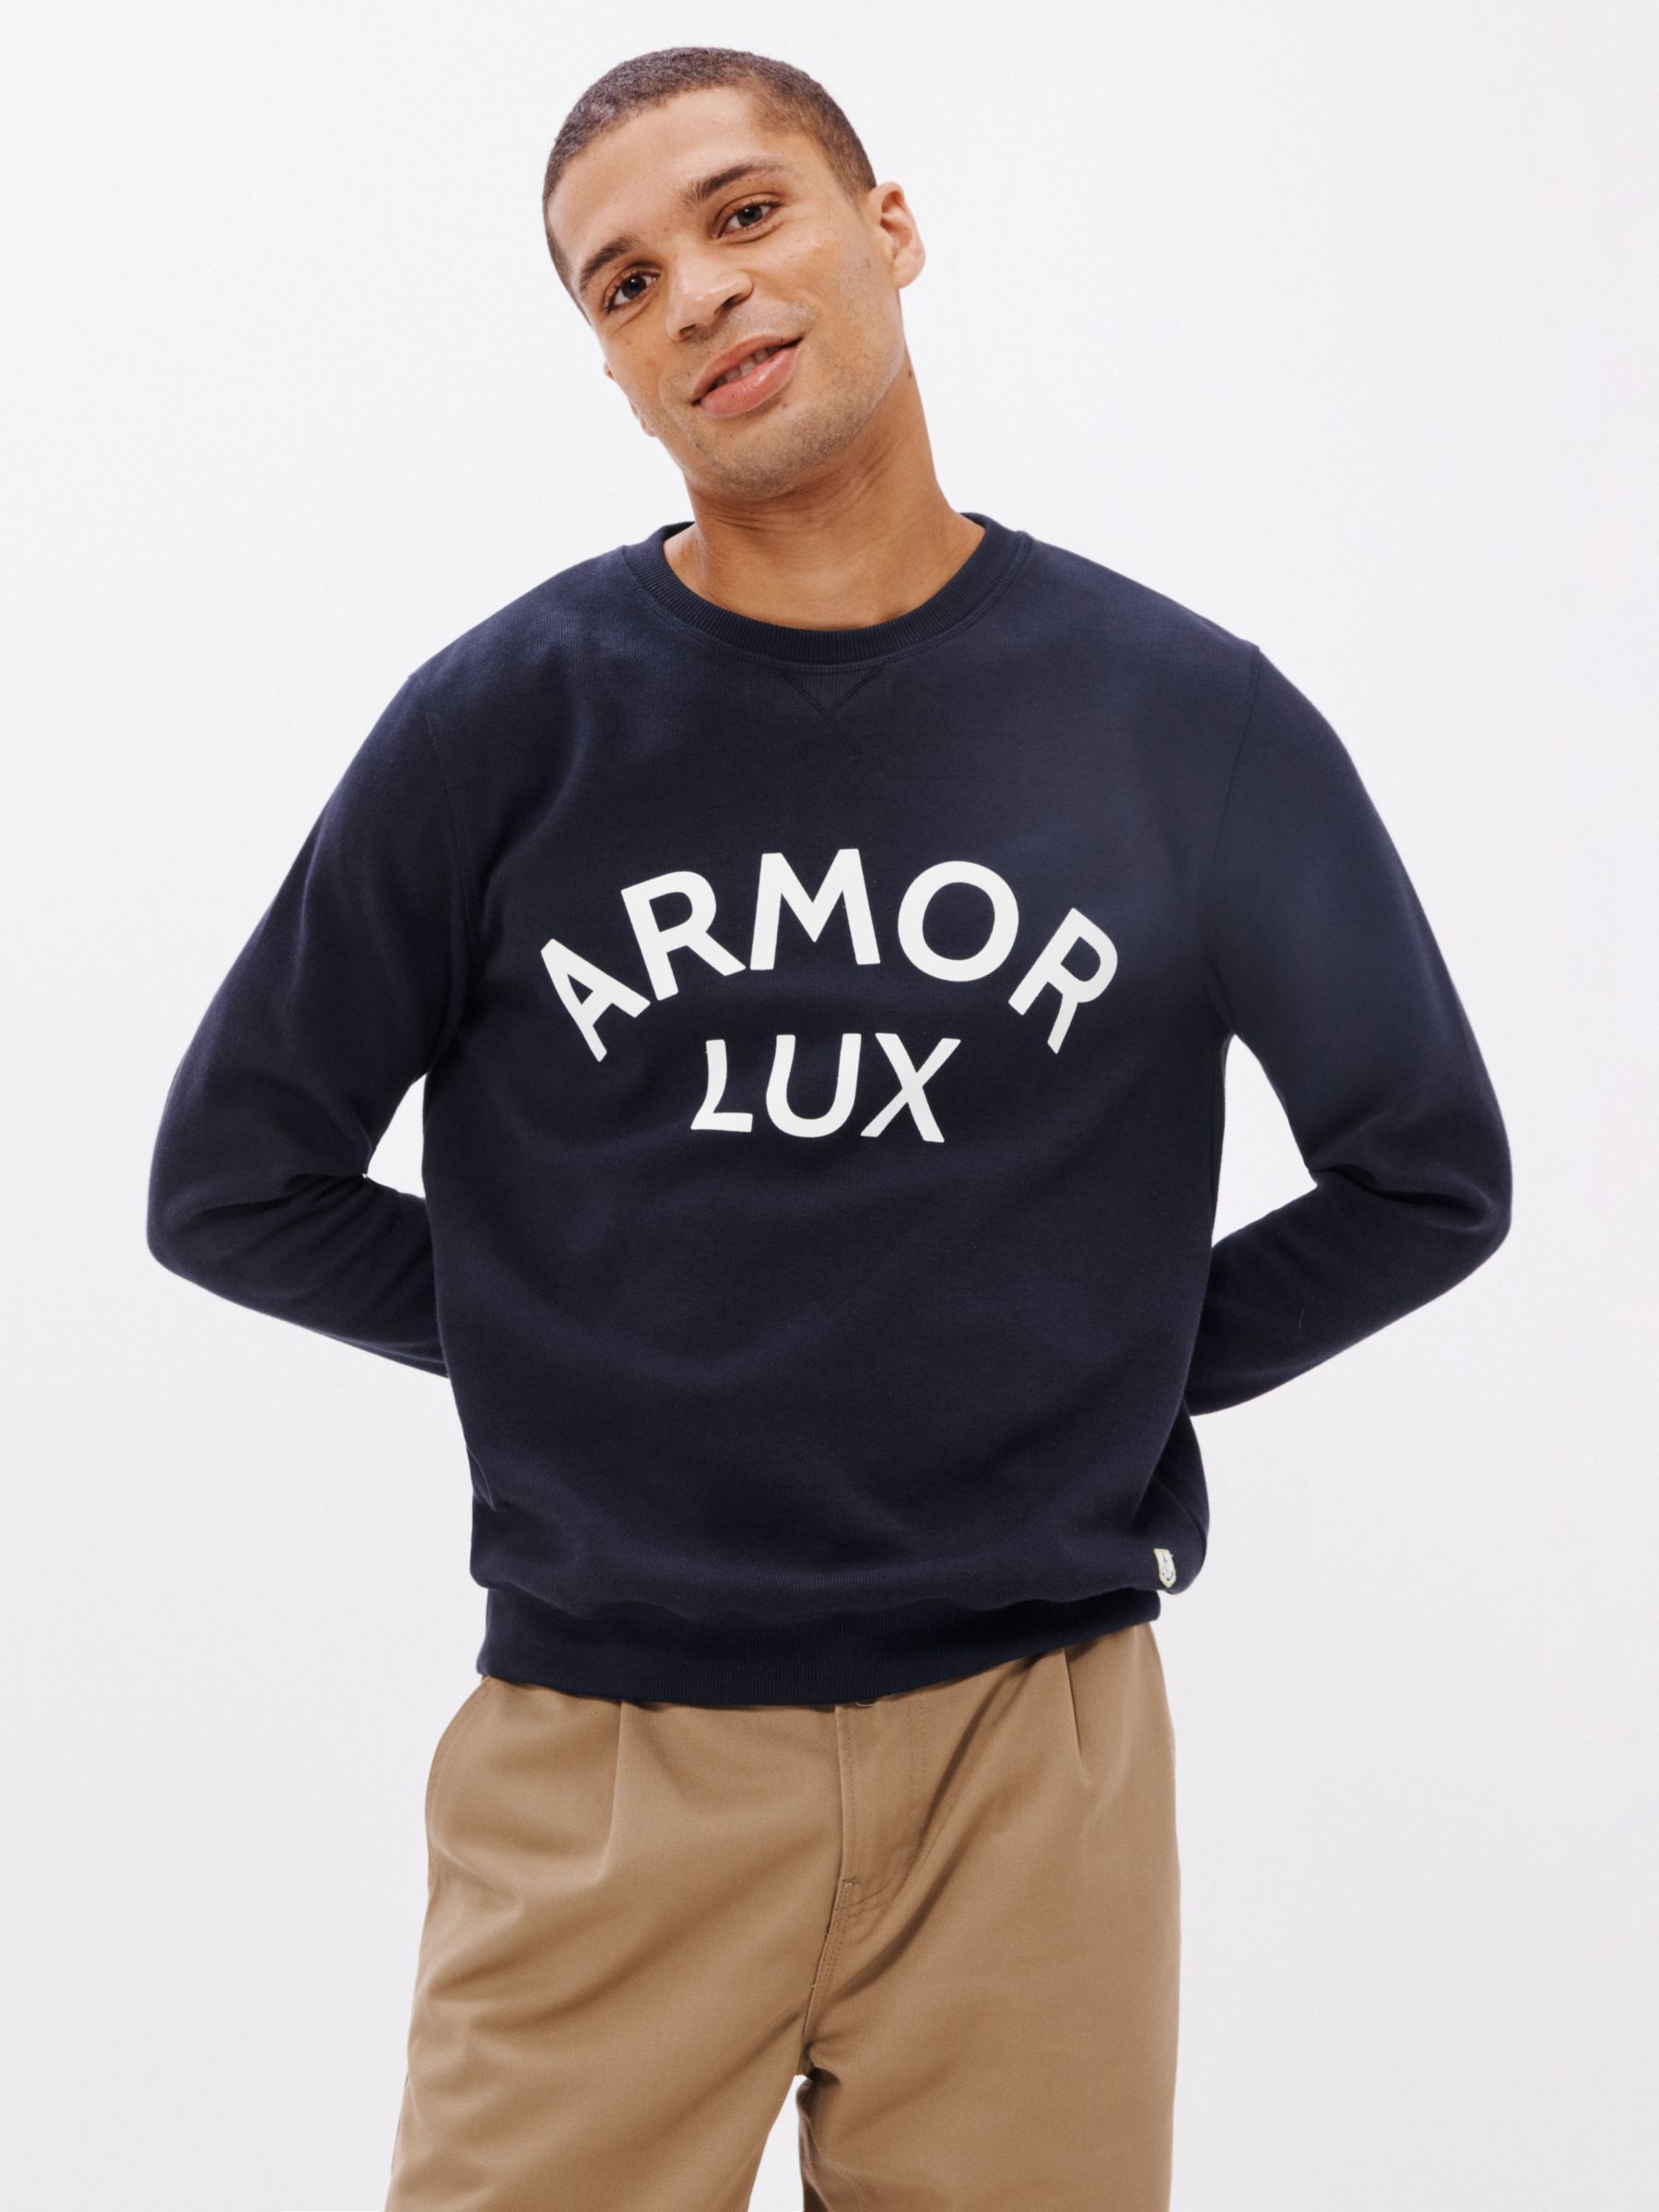 Ongelofelijk Azië procedure Armor Lux Héritage Logo Sweatshirt